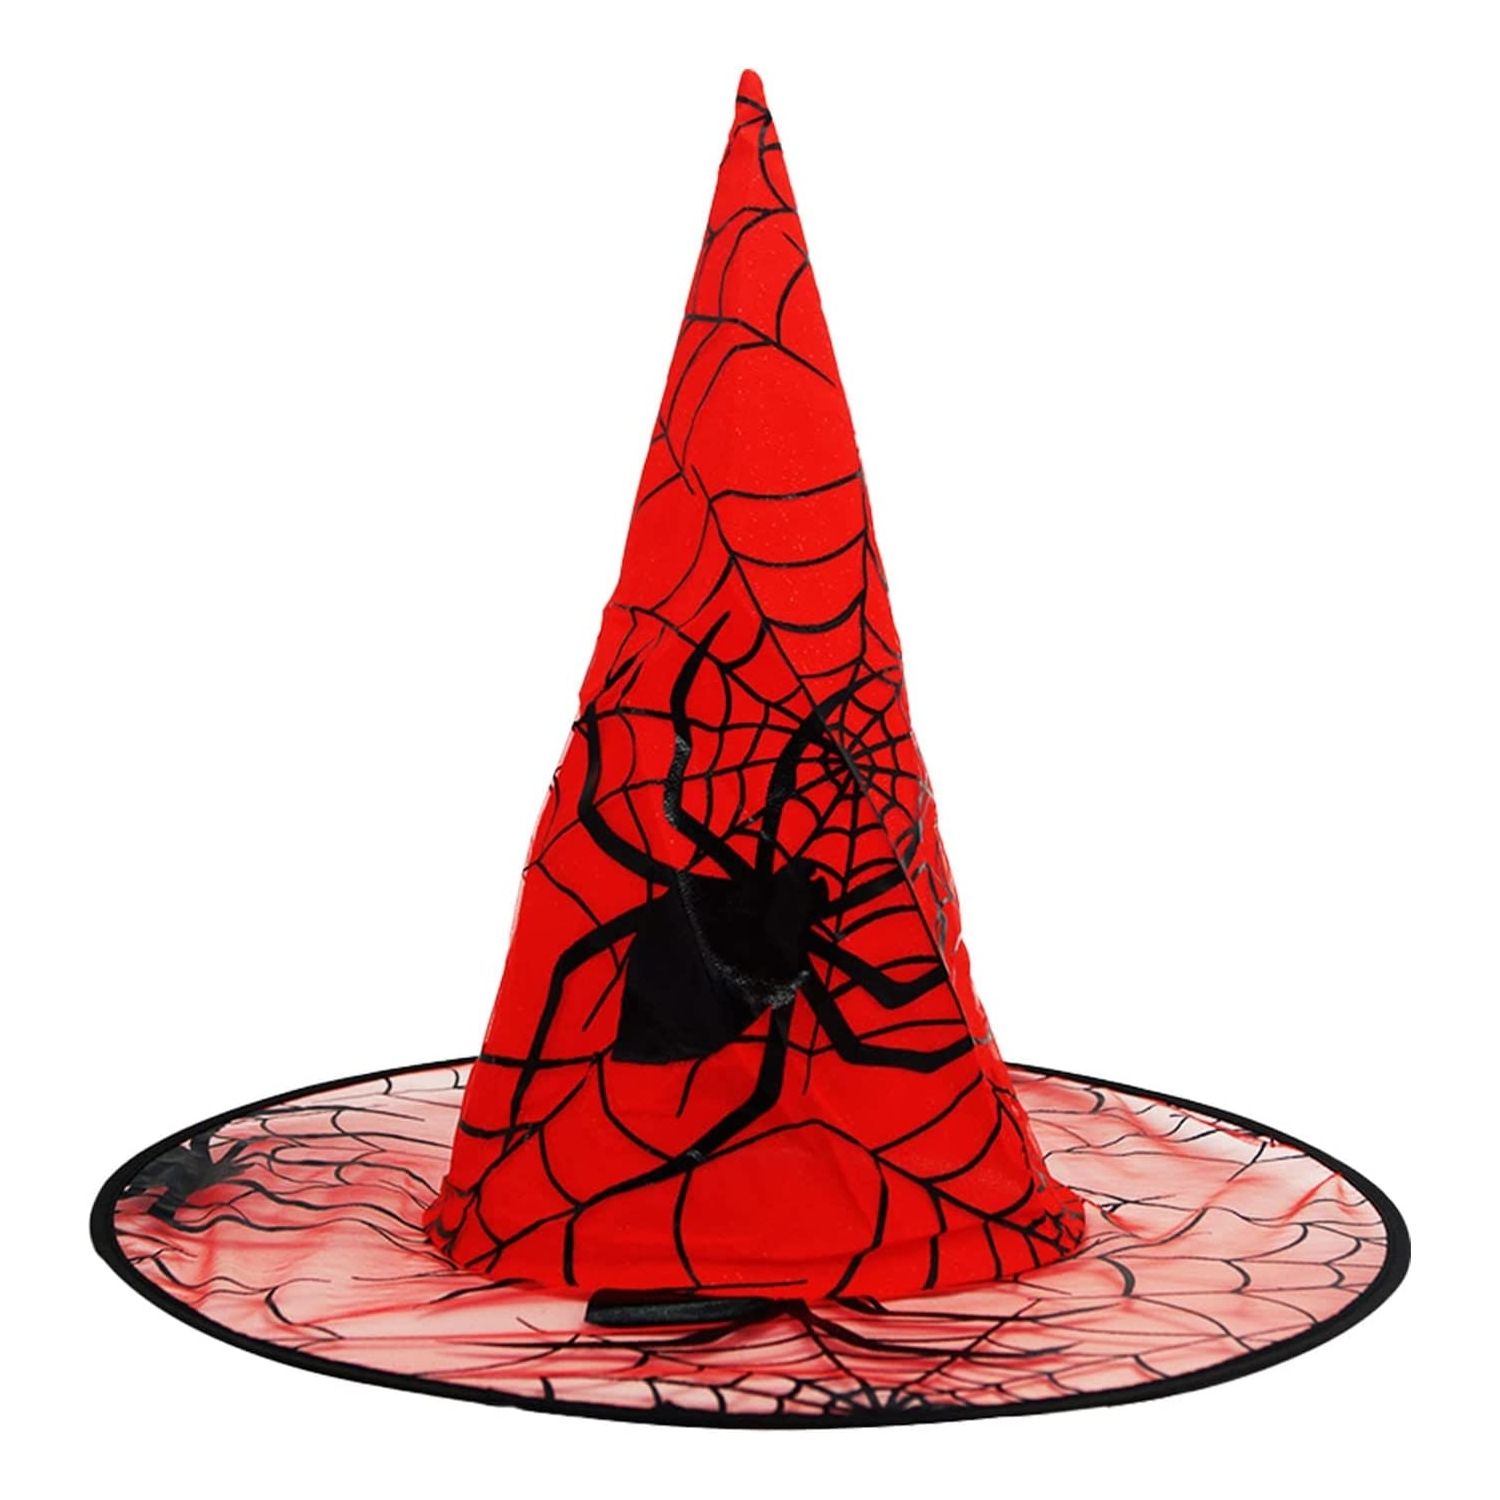 Čarodějnický klobouk s pavučinkou a pavouky ø 37cm - 1ks - Červený